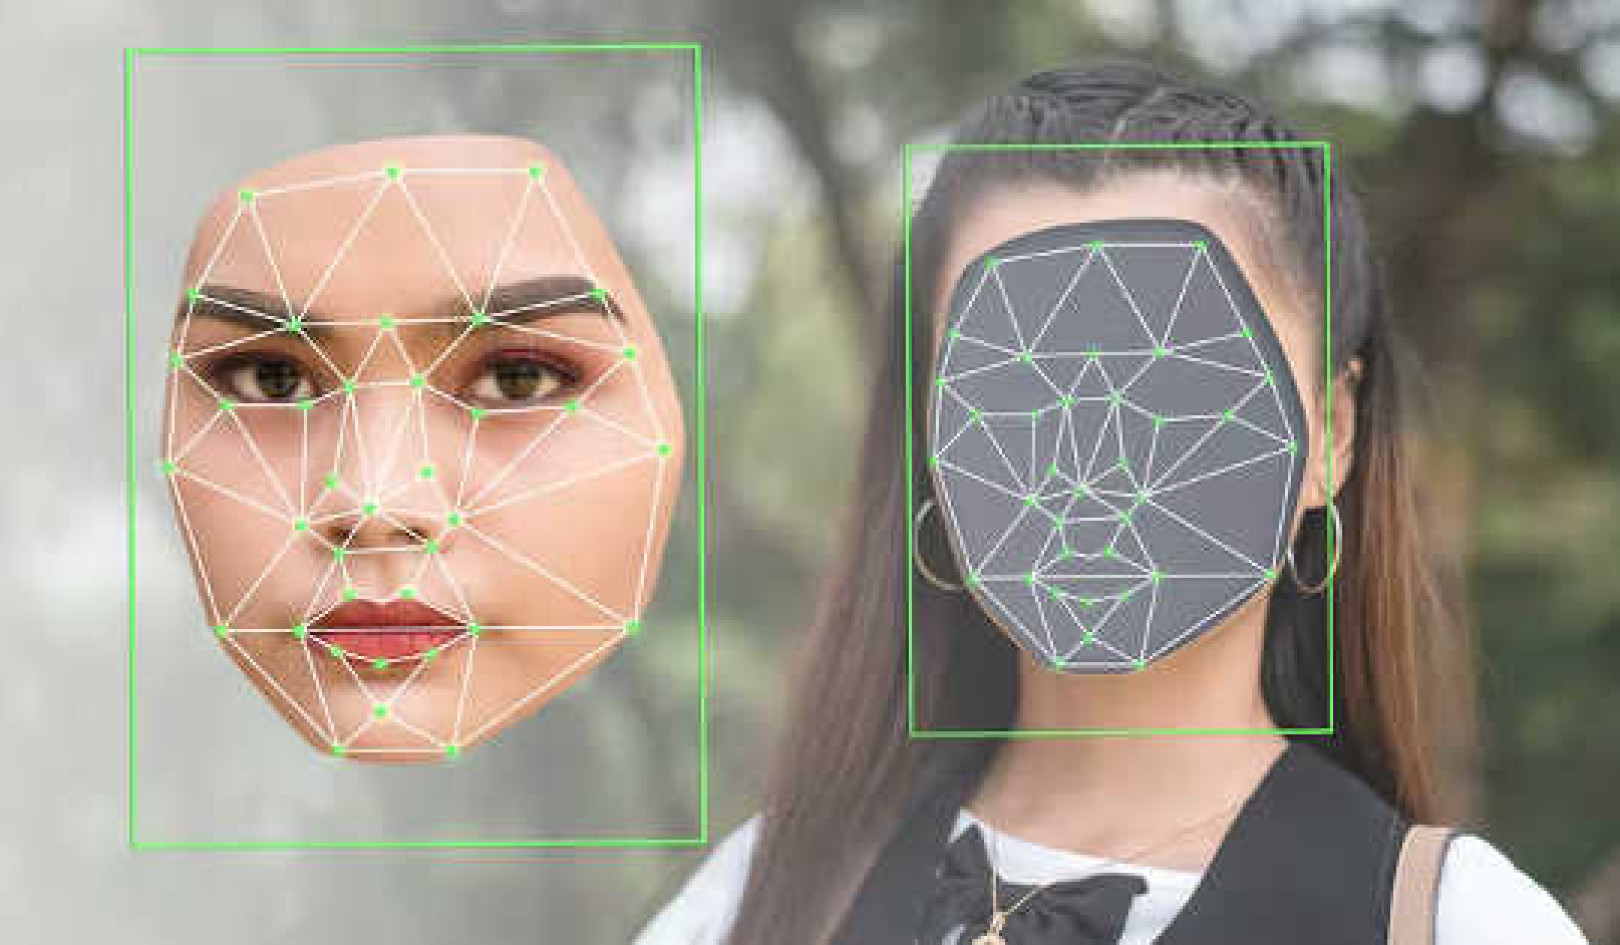 Die Verwendung von Deepfakes kann Zweifel säen und bei Zuschauern Verwirrung und Misstrauen hervorrufen